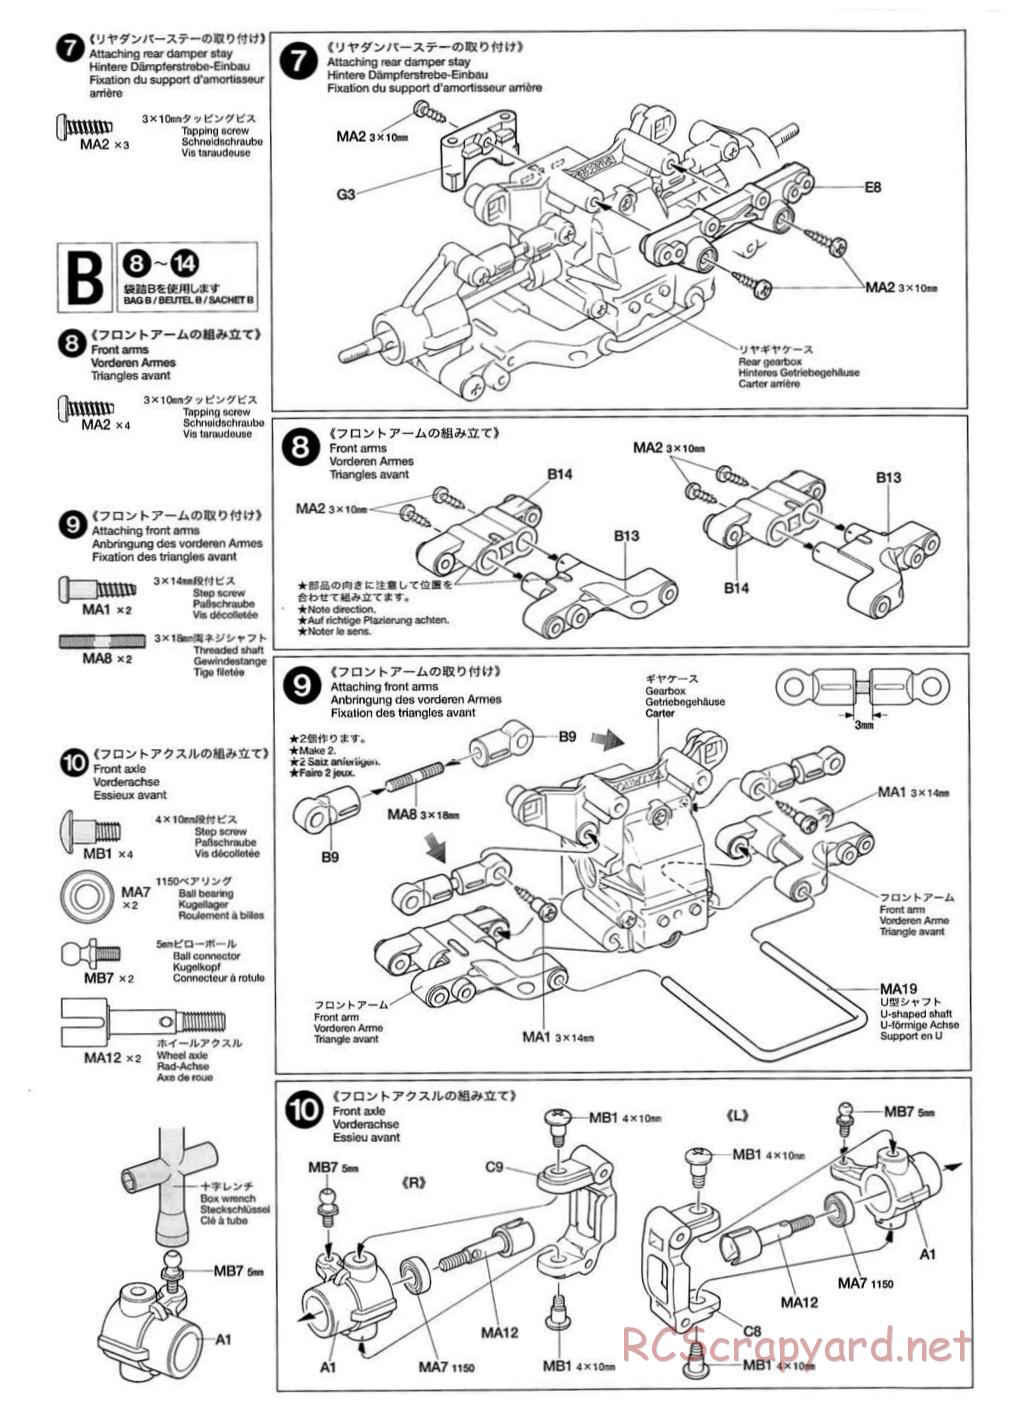 Tamiya - TB-01 Chassis - Manual - Page 6